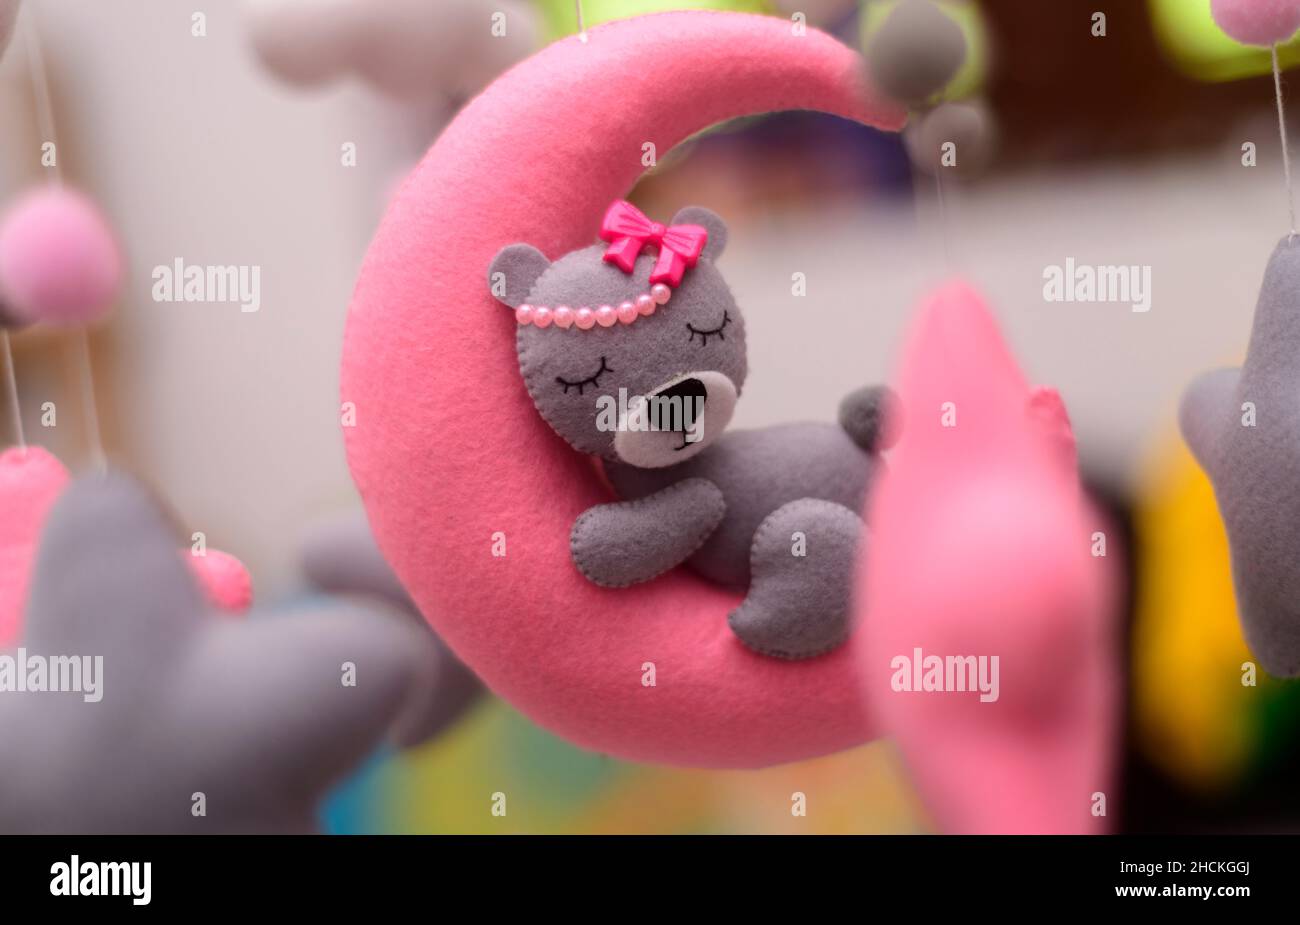 Babykrippe mobile Ornamente hängen aus nächster Nähe, grauer Wollfilz-Bär schläft auf einem rosa plüschtier-Mond, umgeben von Sternen. Stockfoto